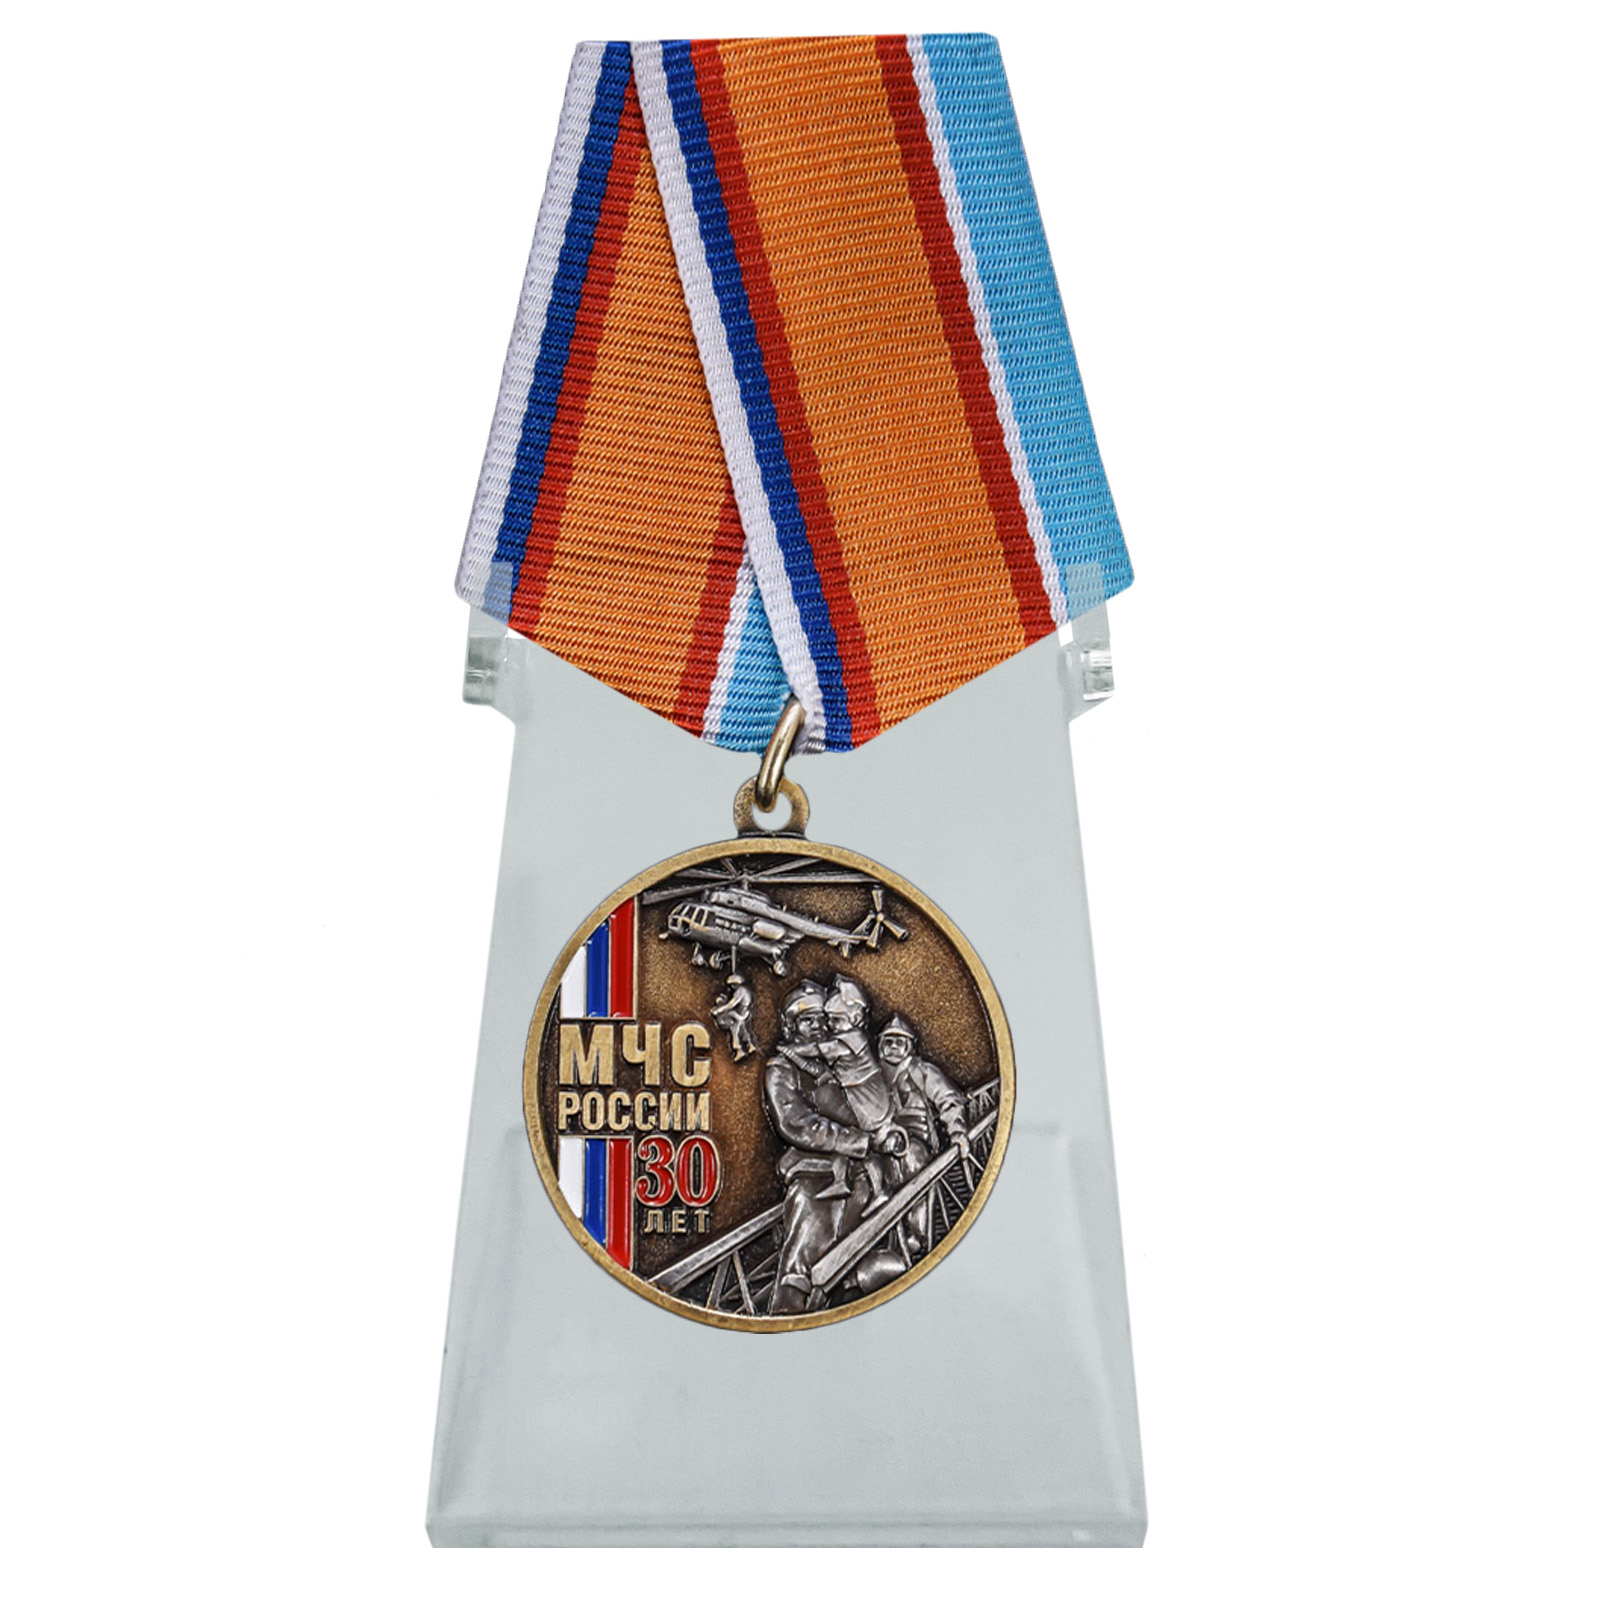 Медаль "30 лет МЧС России" на подставке